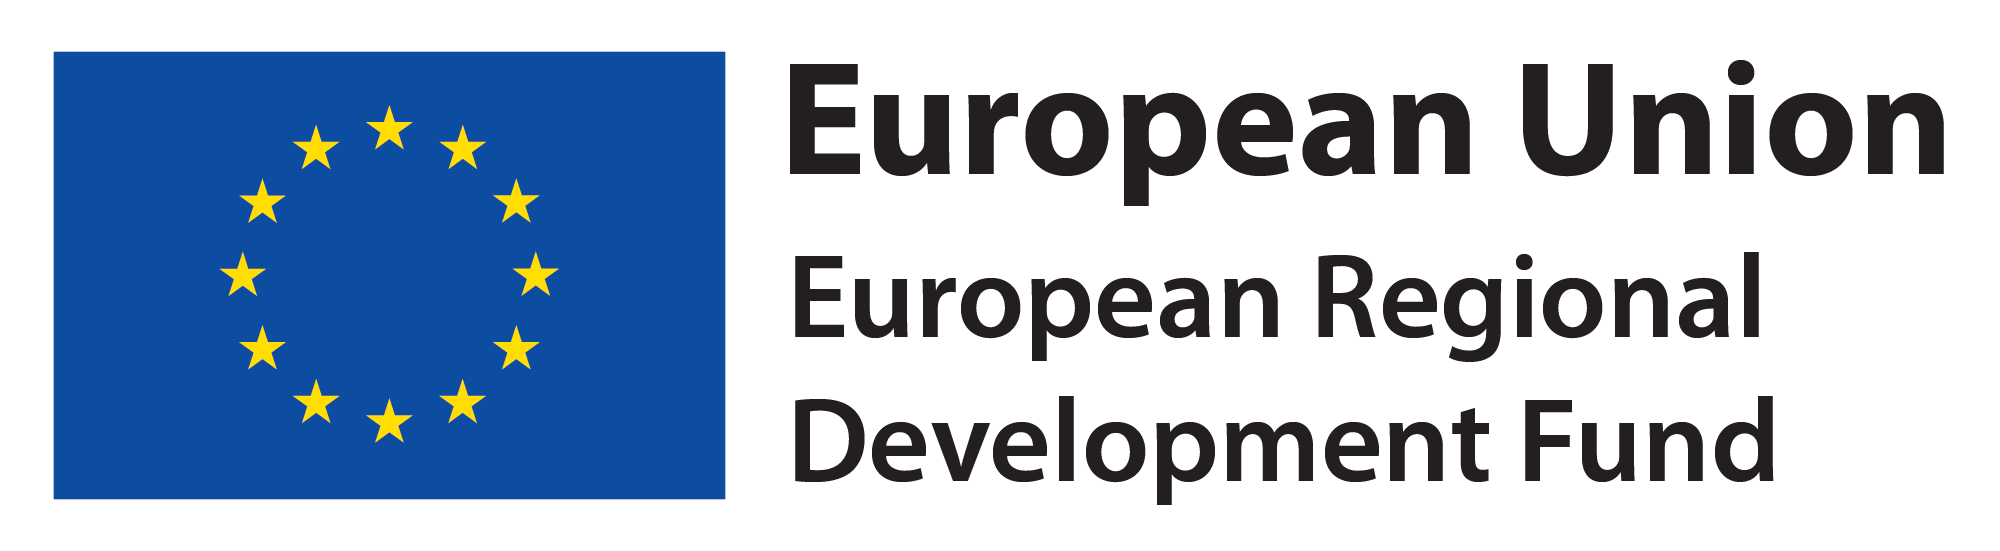 EU Development Fund